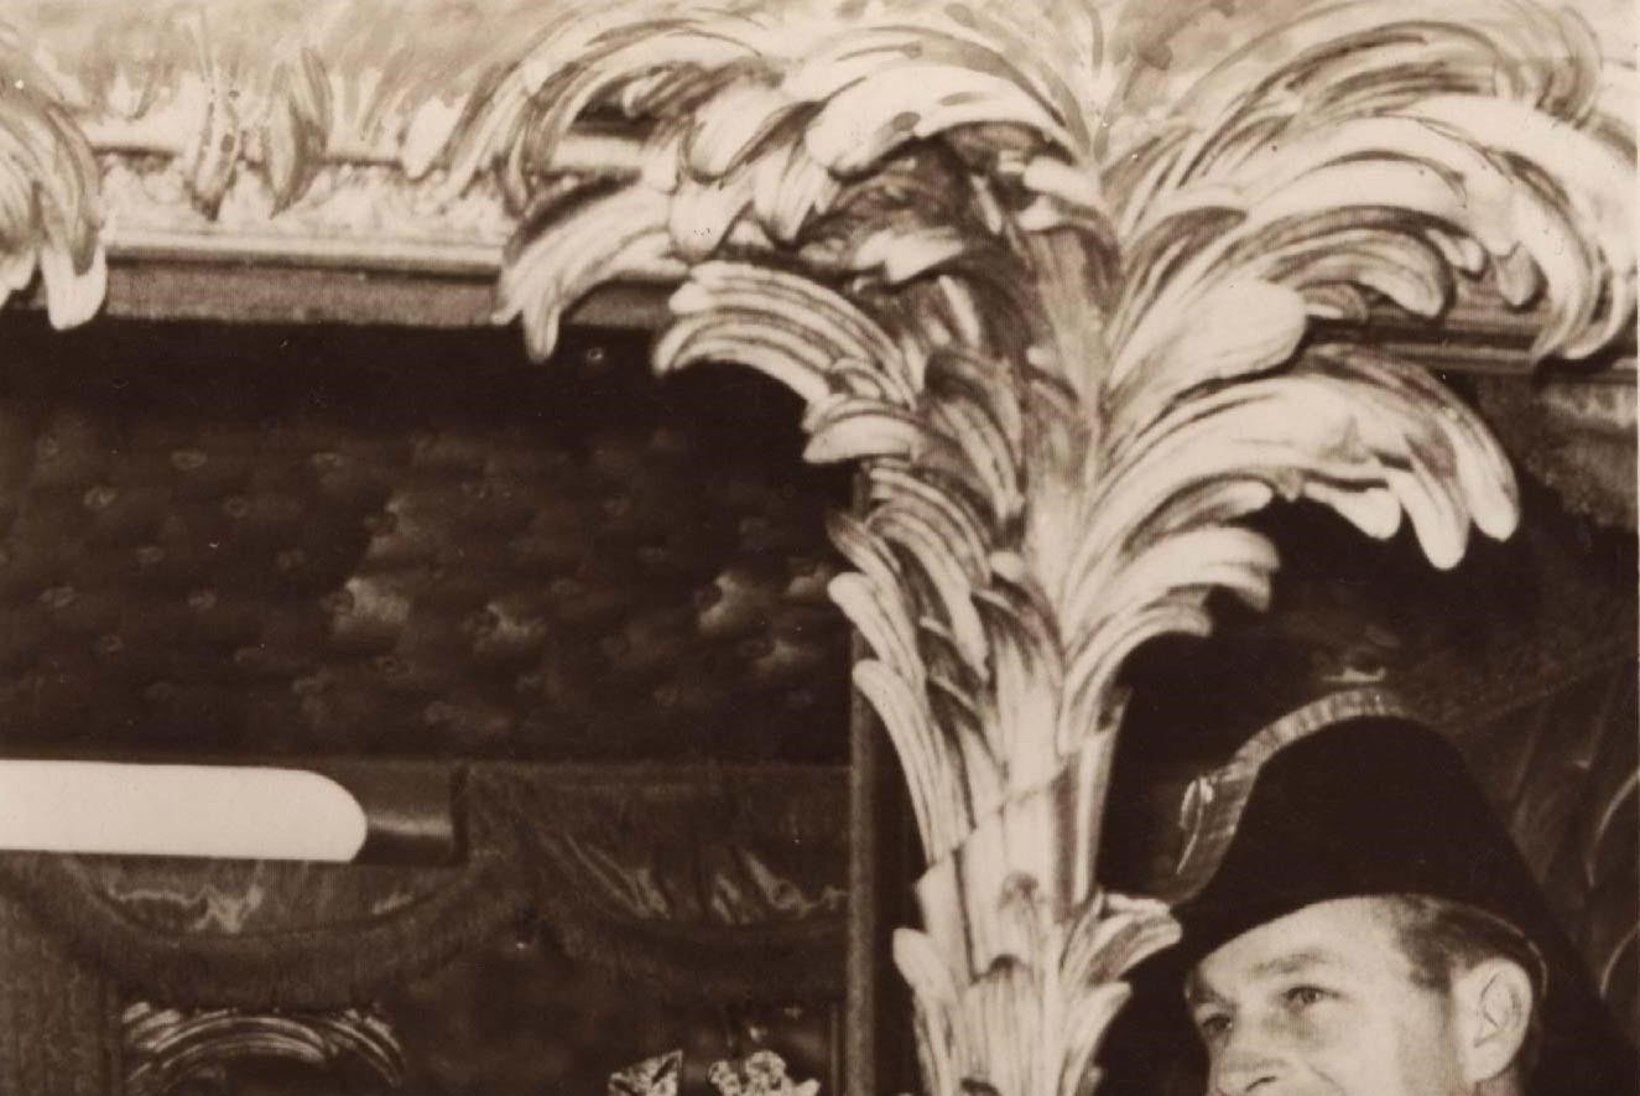 KUNINGANNA KÄIS NOORUSMAIL: Elizabeth II kordas oma kroonimisaasta rongireisi